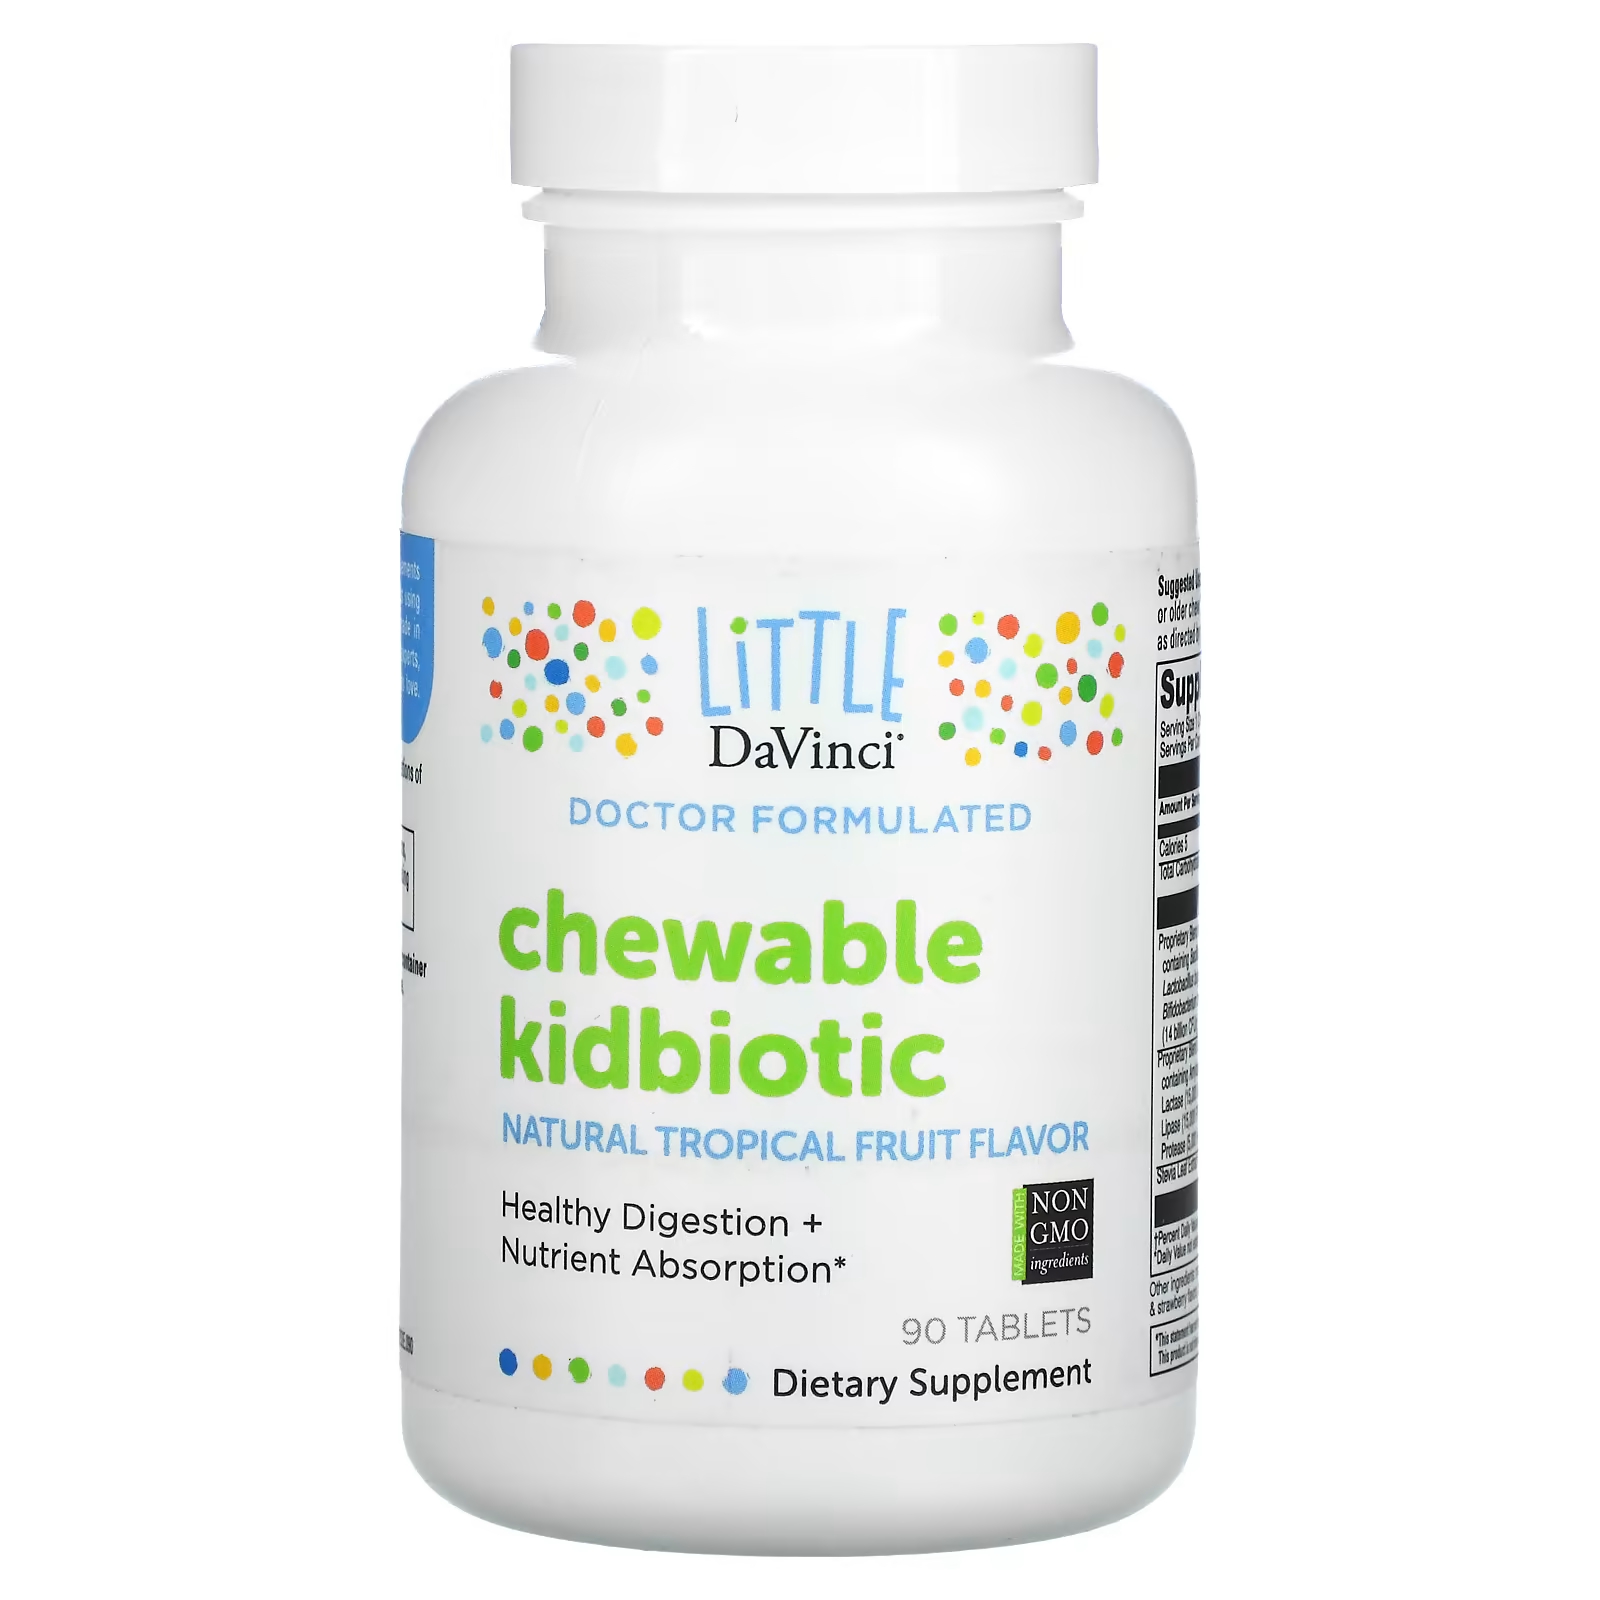 Жевательные таблетки Little DaVinci Kidbiotic с натуральными тропическими фруктами, 90 таблеток little davinci жевательные пробиотики для детей натуральный вкус тропических фруктов 90 таблеток